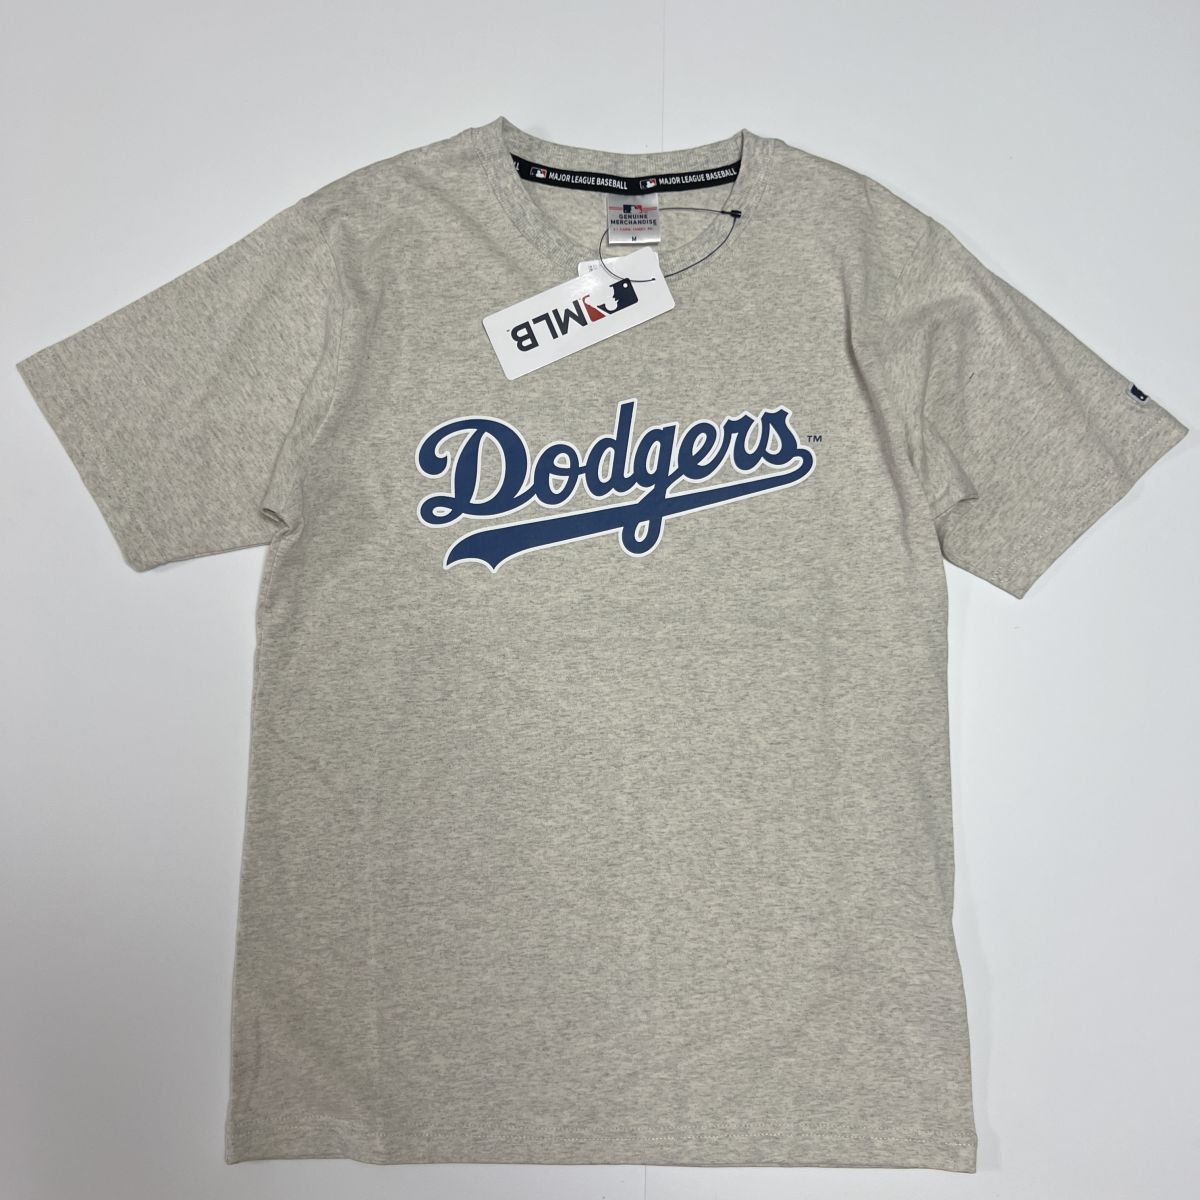 送料390円可能商品 ドジャース Dodgers MLB 新品 メンズ メジャーリーグ 大谷翔平 山本由伸 半袖 Tシャツ[C5431MR-N2-3L] 一 三 零 QWER